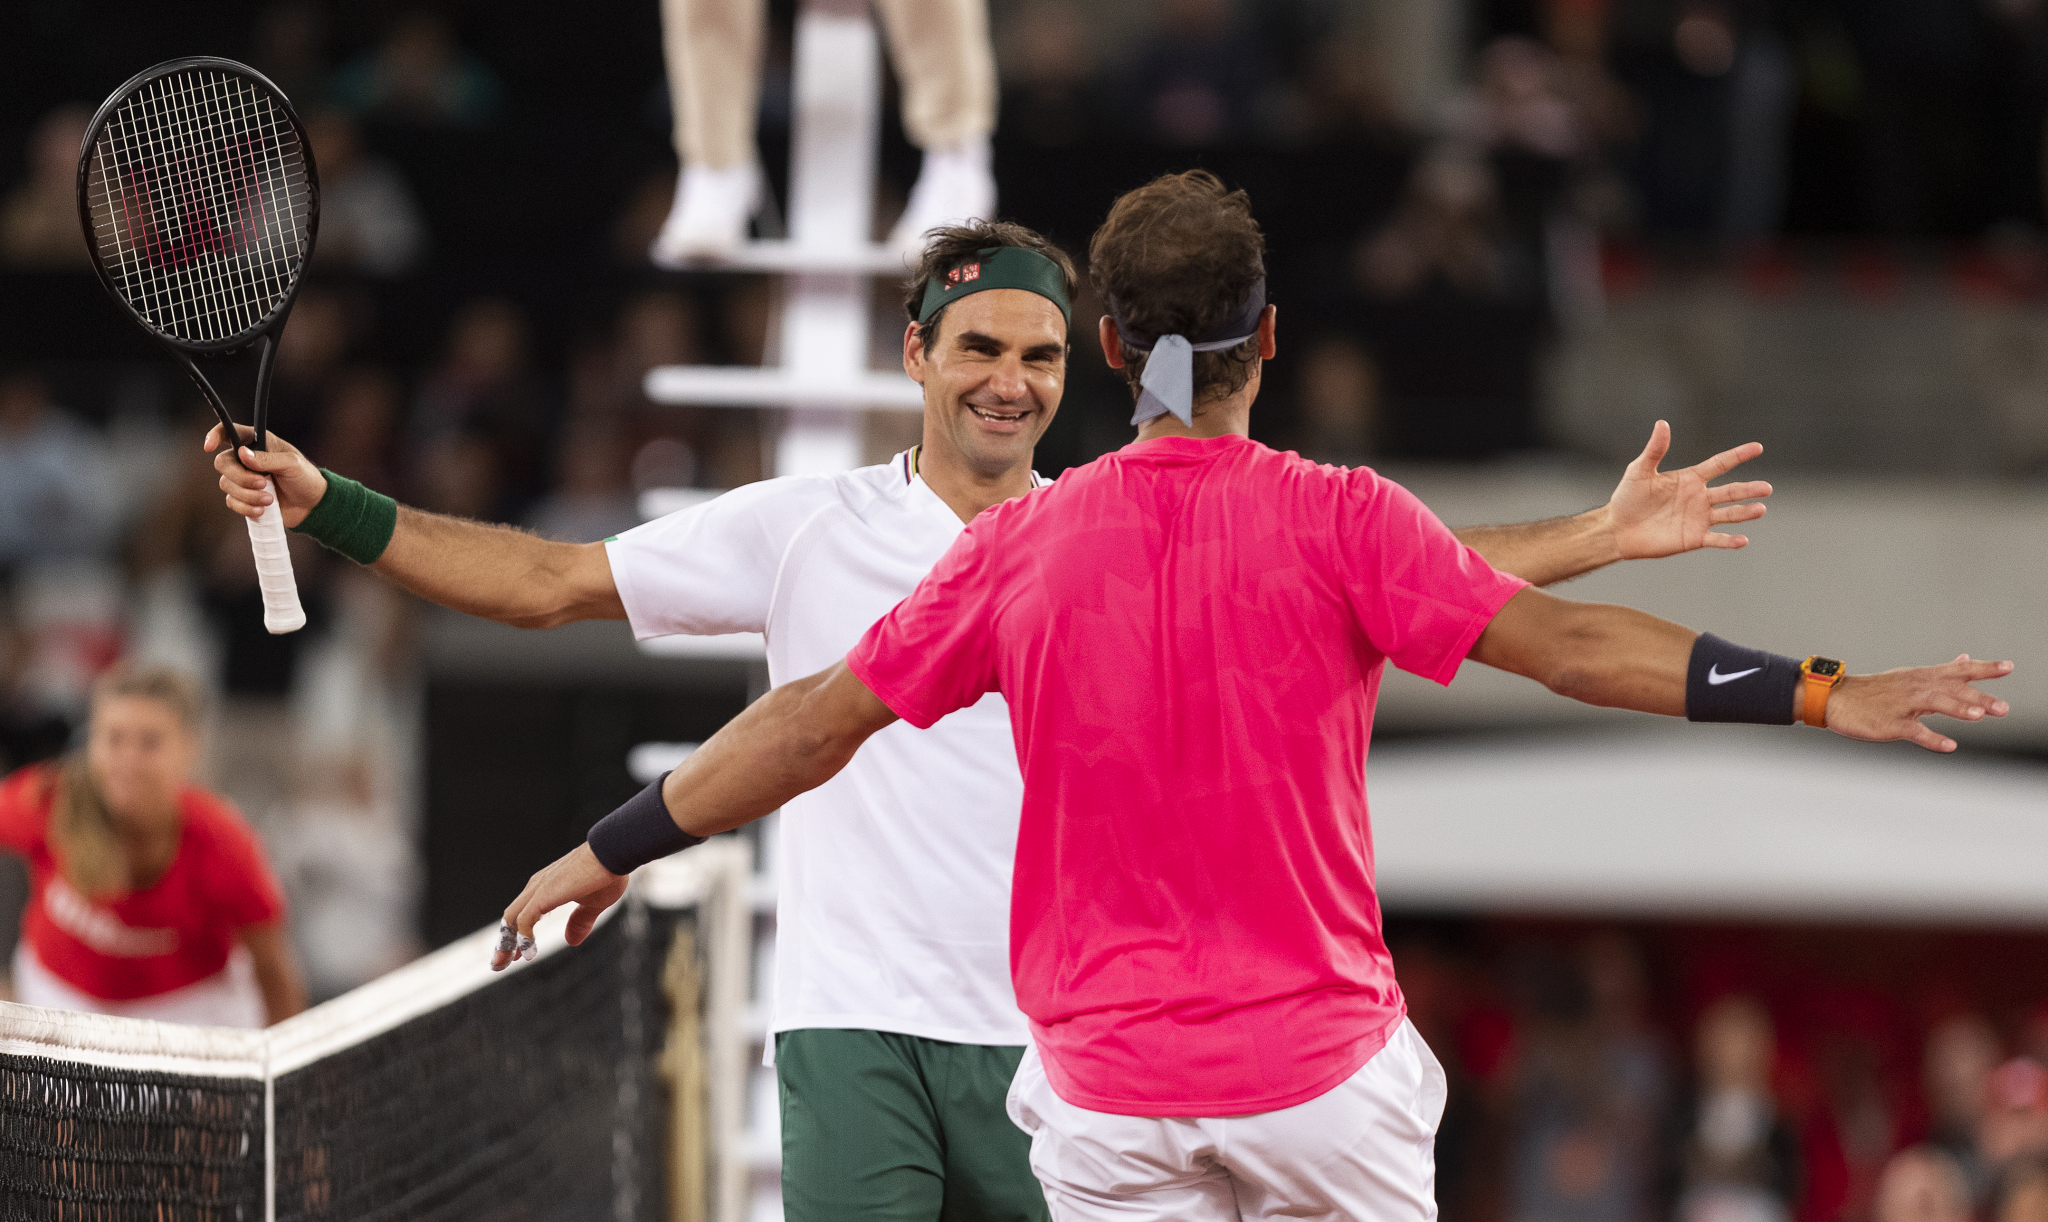 SRAMNE PROVOKACIJE PRED FINALE! Nadal i Federer su OPSEDNUTI Đokovićem, kada ovo vidite sve će vam biti jasno! (FOTO)